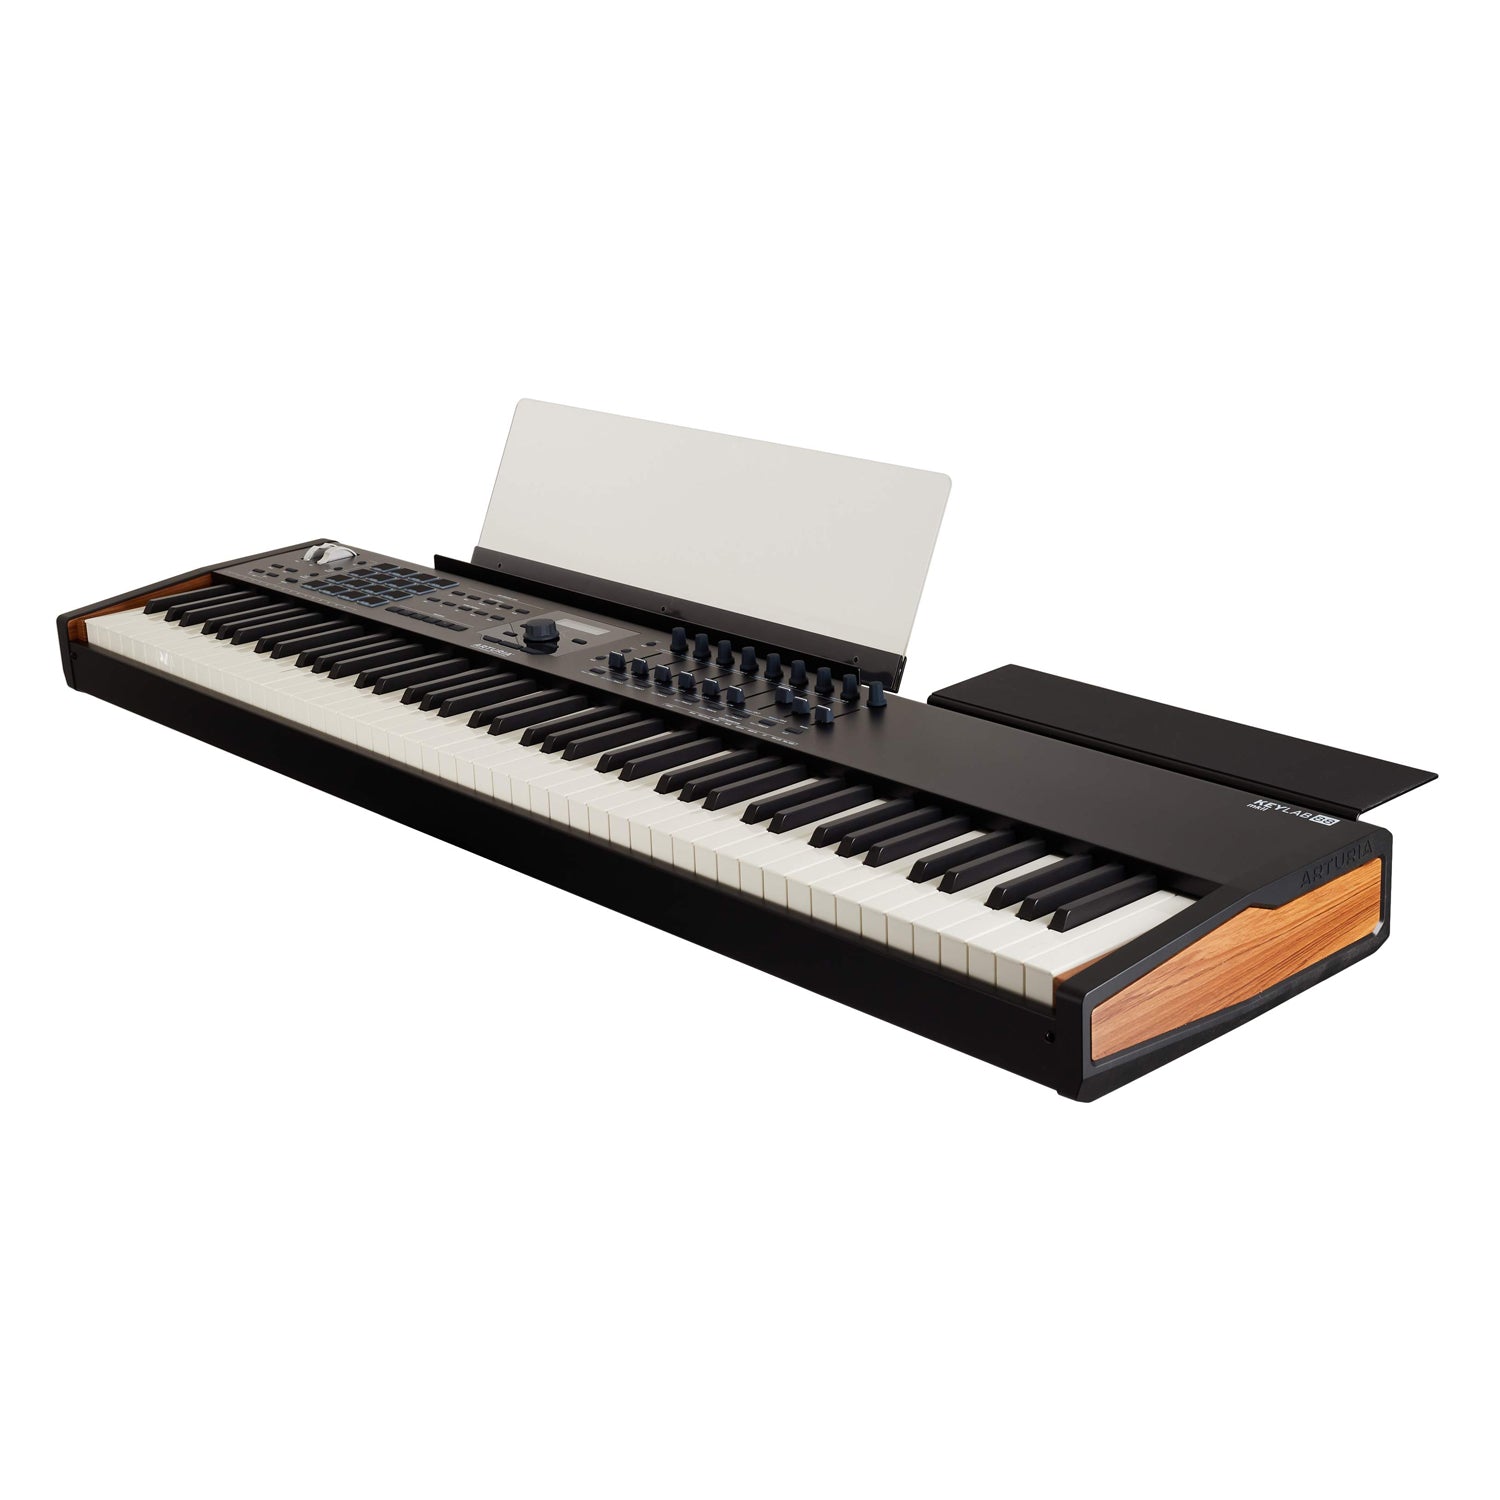 Arturia　2.0　Keys　Keylab　Superstore　88　Control　MKII　JG　88　USB　Universal　MIDI　Keyboard　–